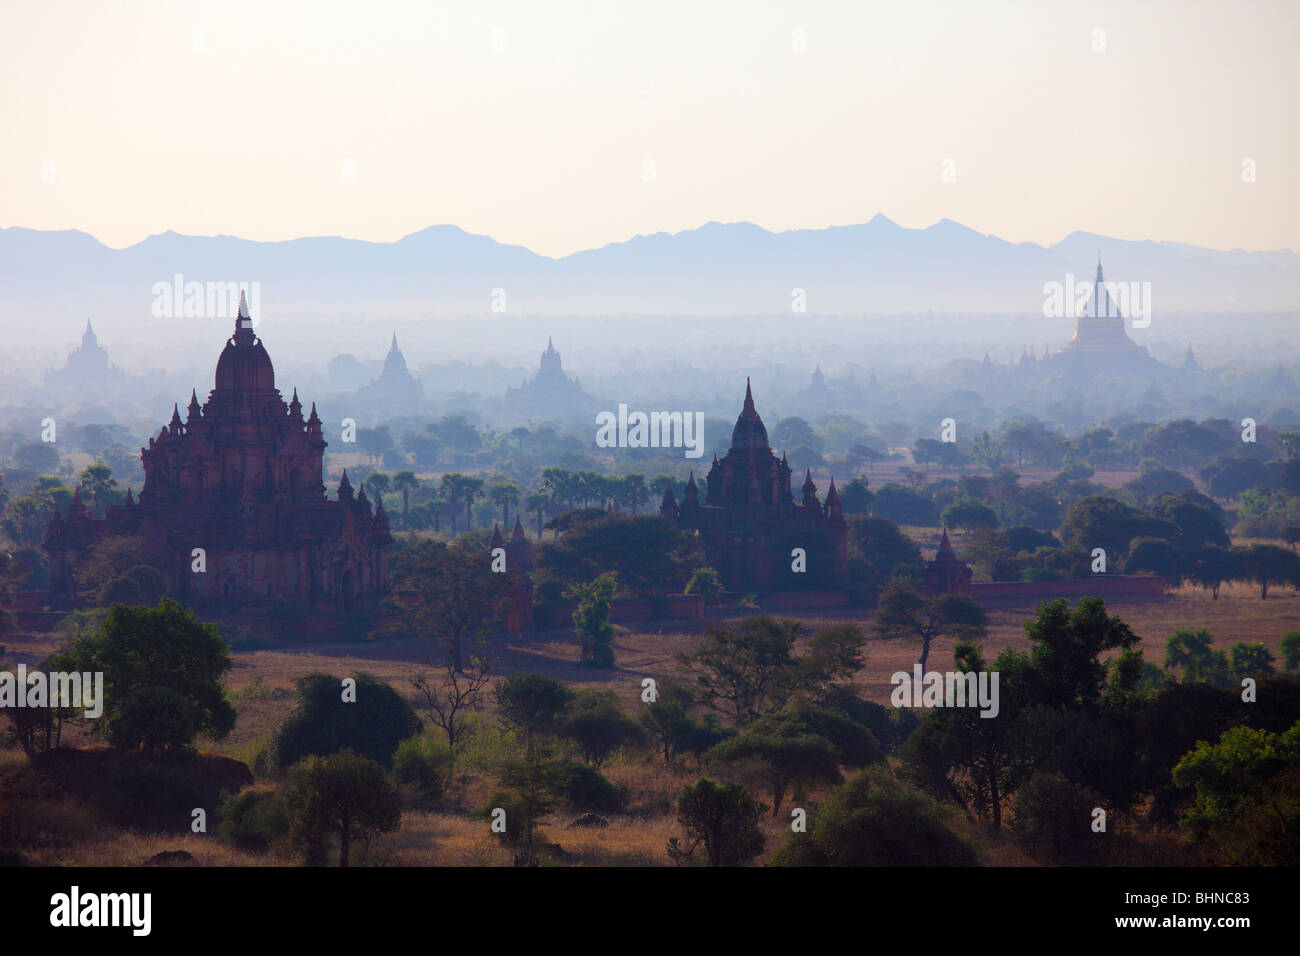 Myanmar, Burma, Bagan, temples, morning mist, general aerial panoramic view Stock Photo